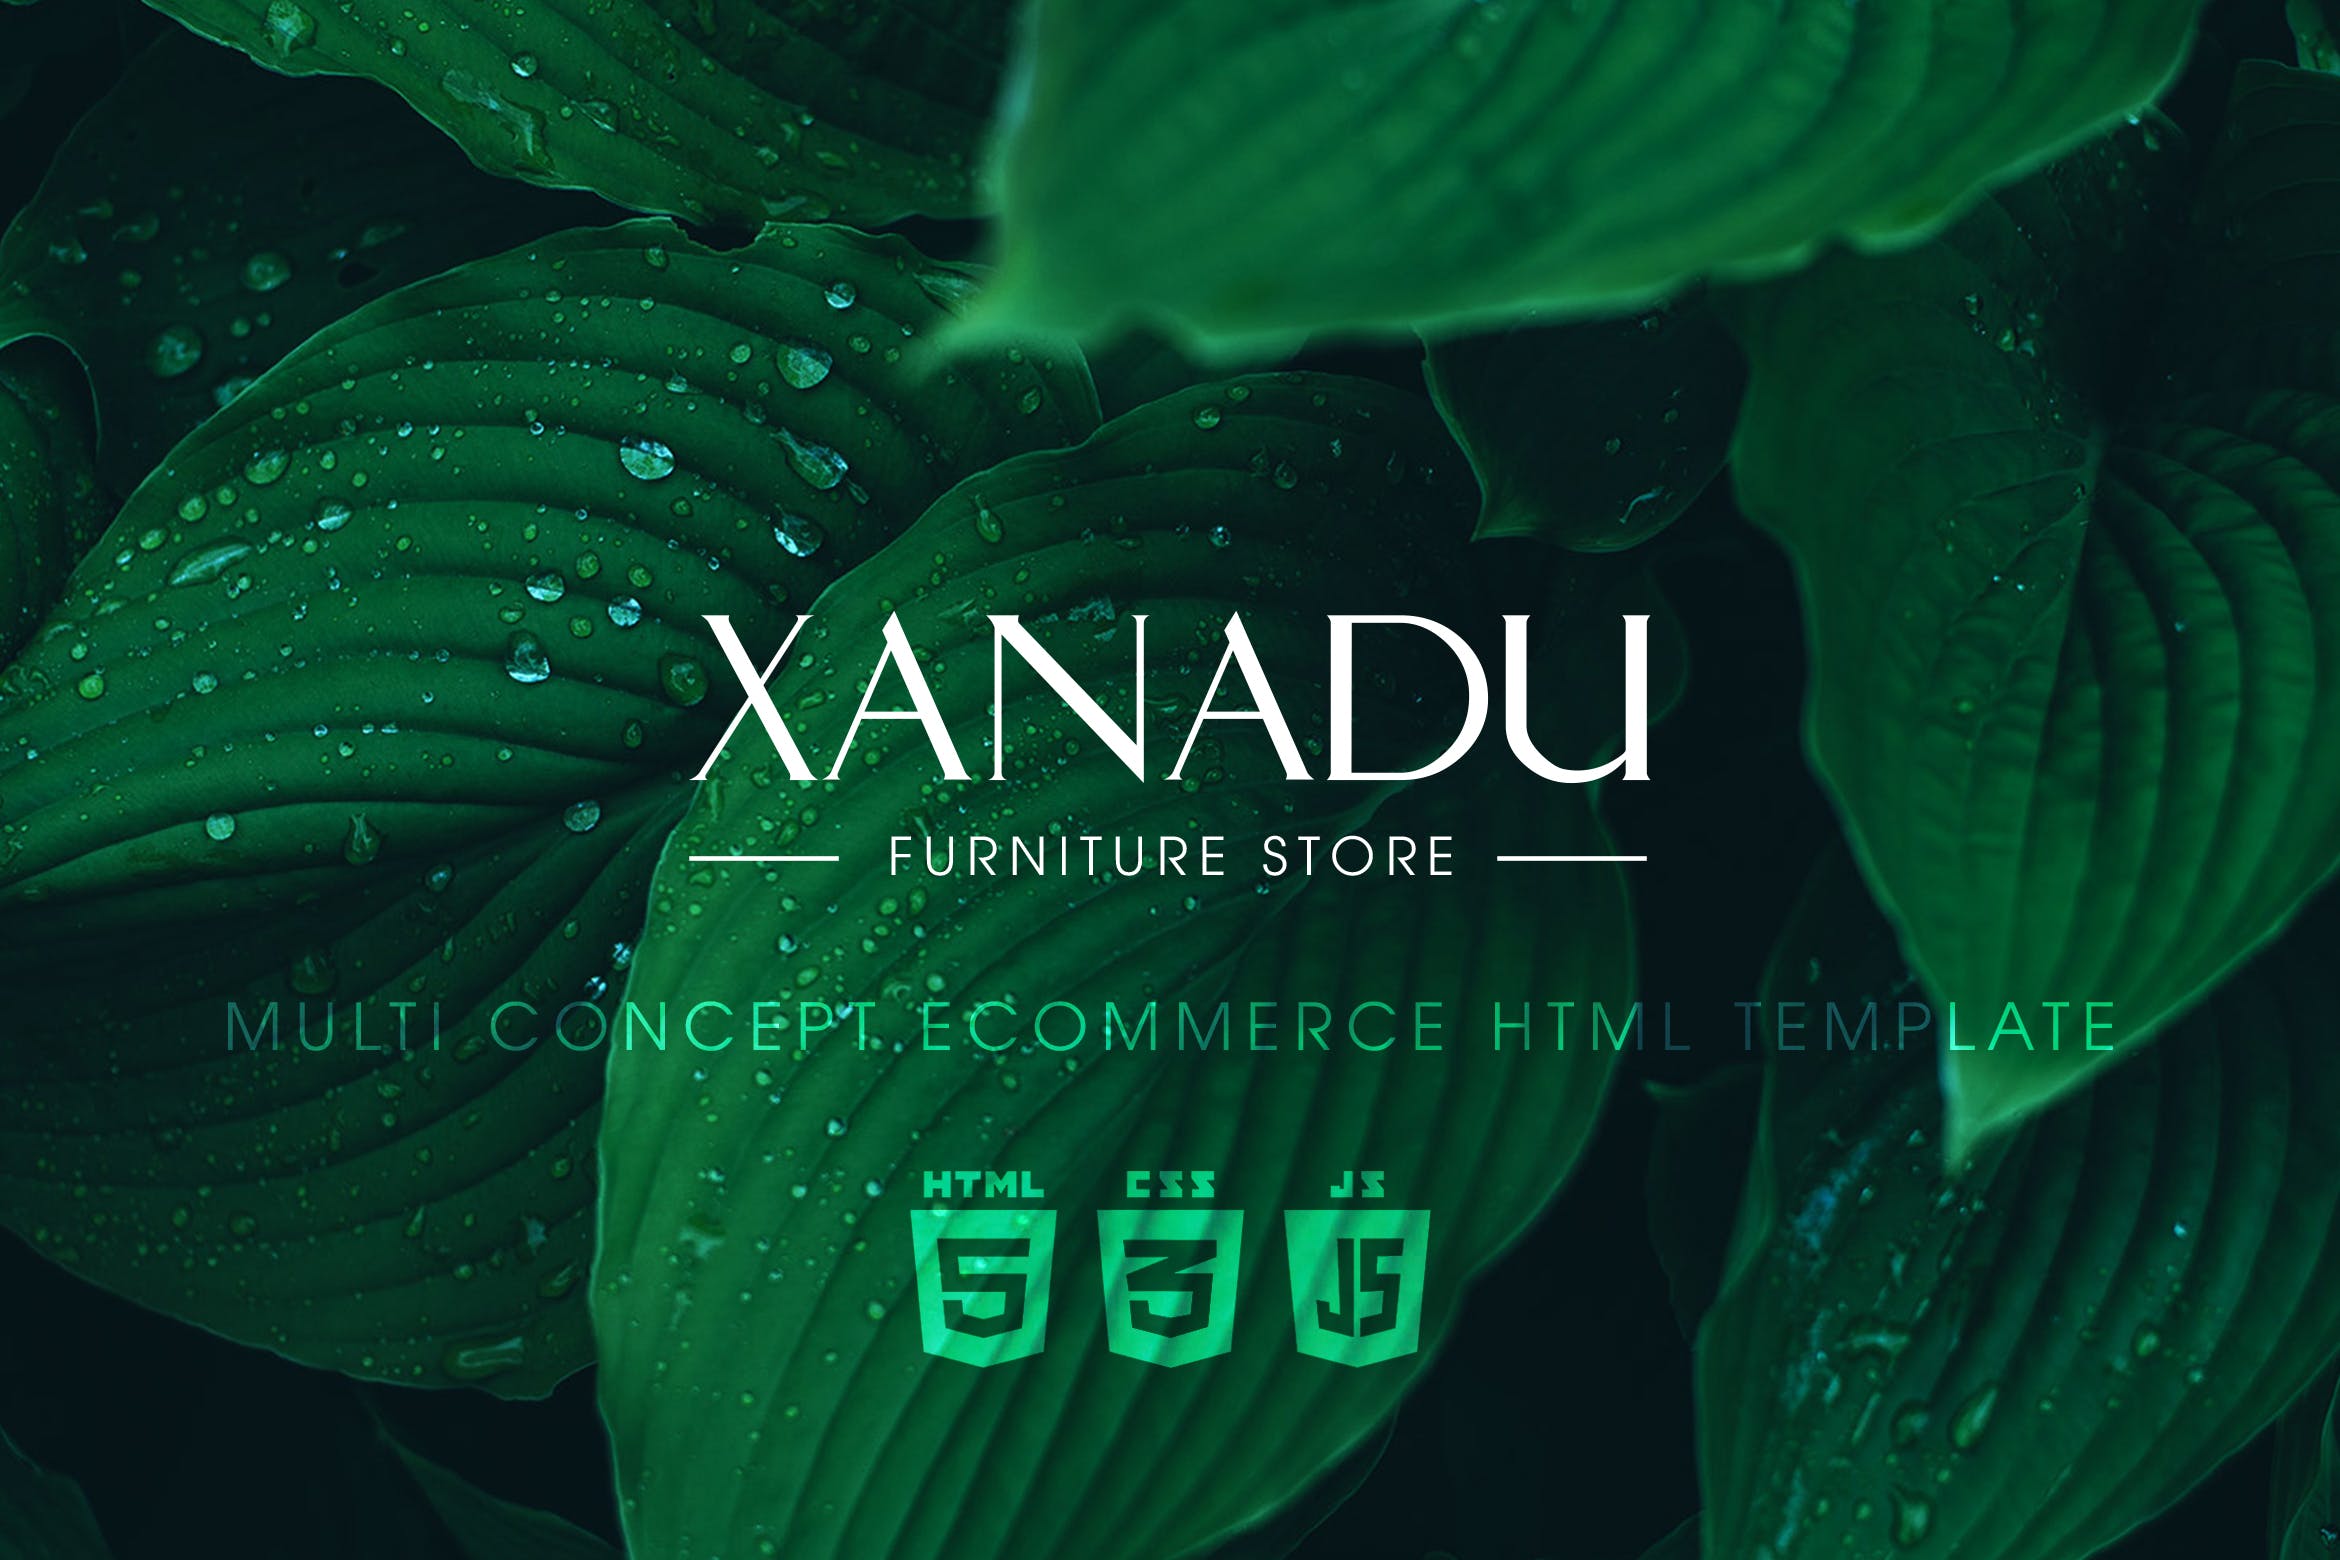 现代家具网上商城HTML模板素材库精选下载 Xanadu | Multi Concept eCommerce HTML Template插图